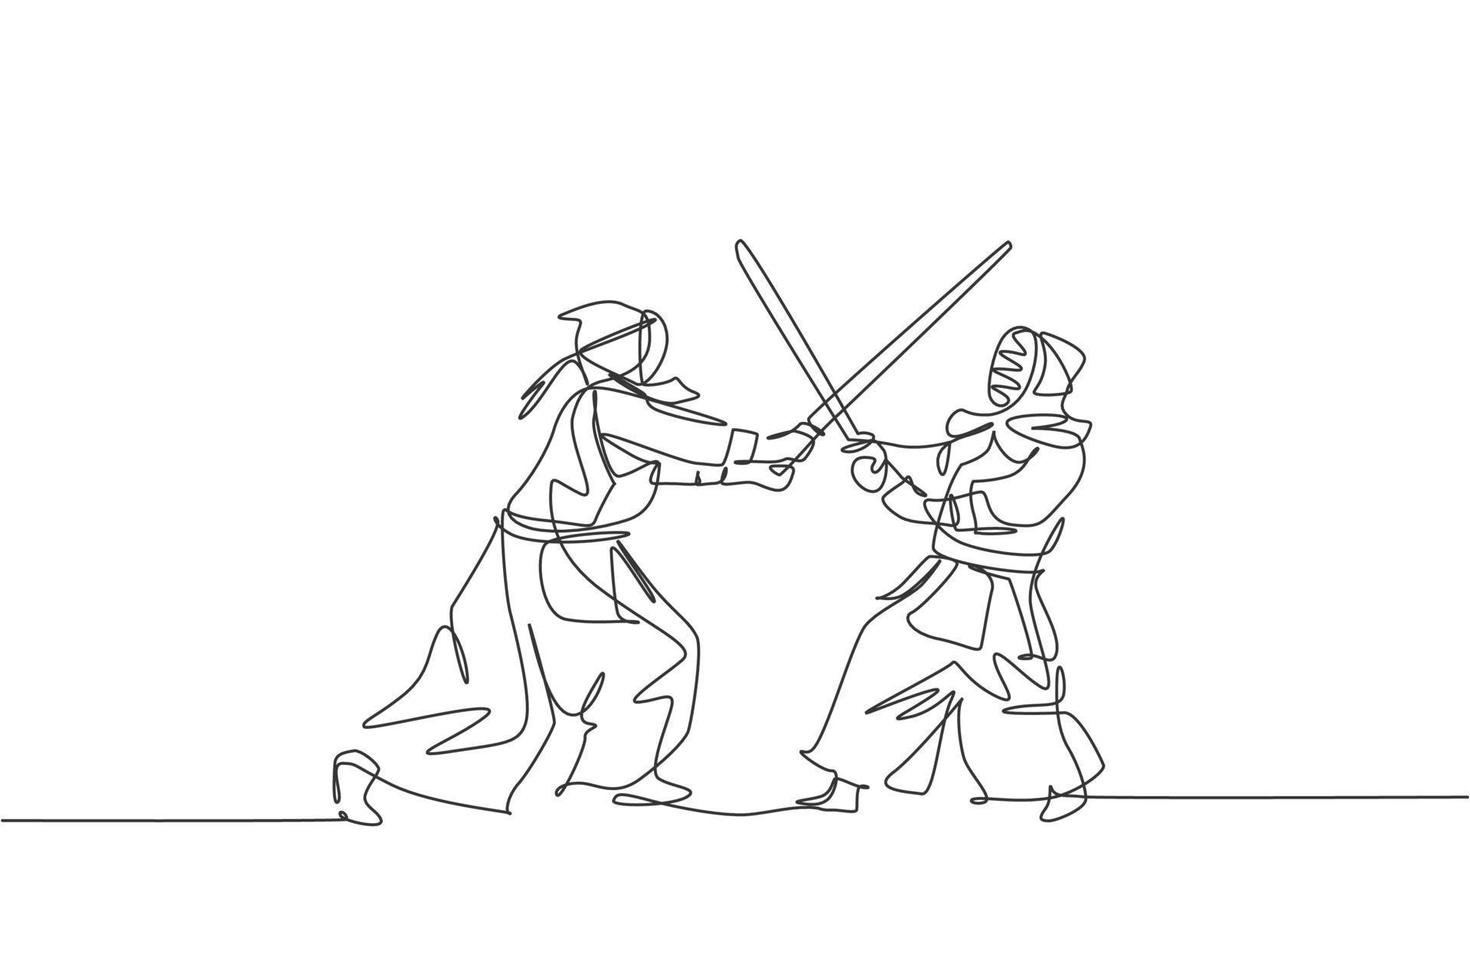 dibujo de una sola línea continua de dos jóvenes deportistas que practican defensa y ataque para la habilidad de arte marcial kendo en el centro deportivo del gimnasio. concepto de deporte de lucha. ilustración de vector de diseño de dibujo de una línea